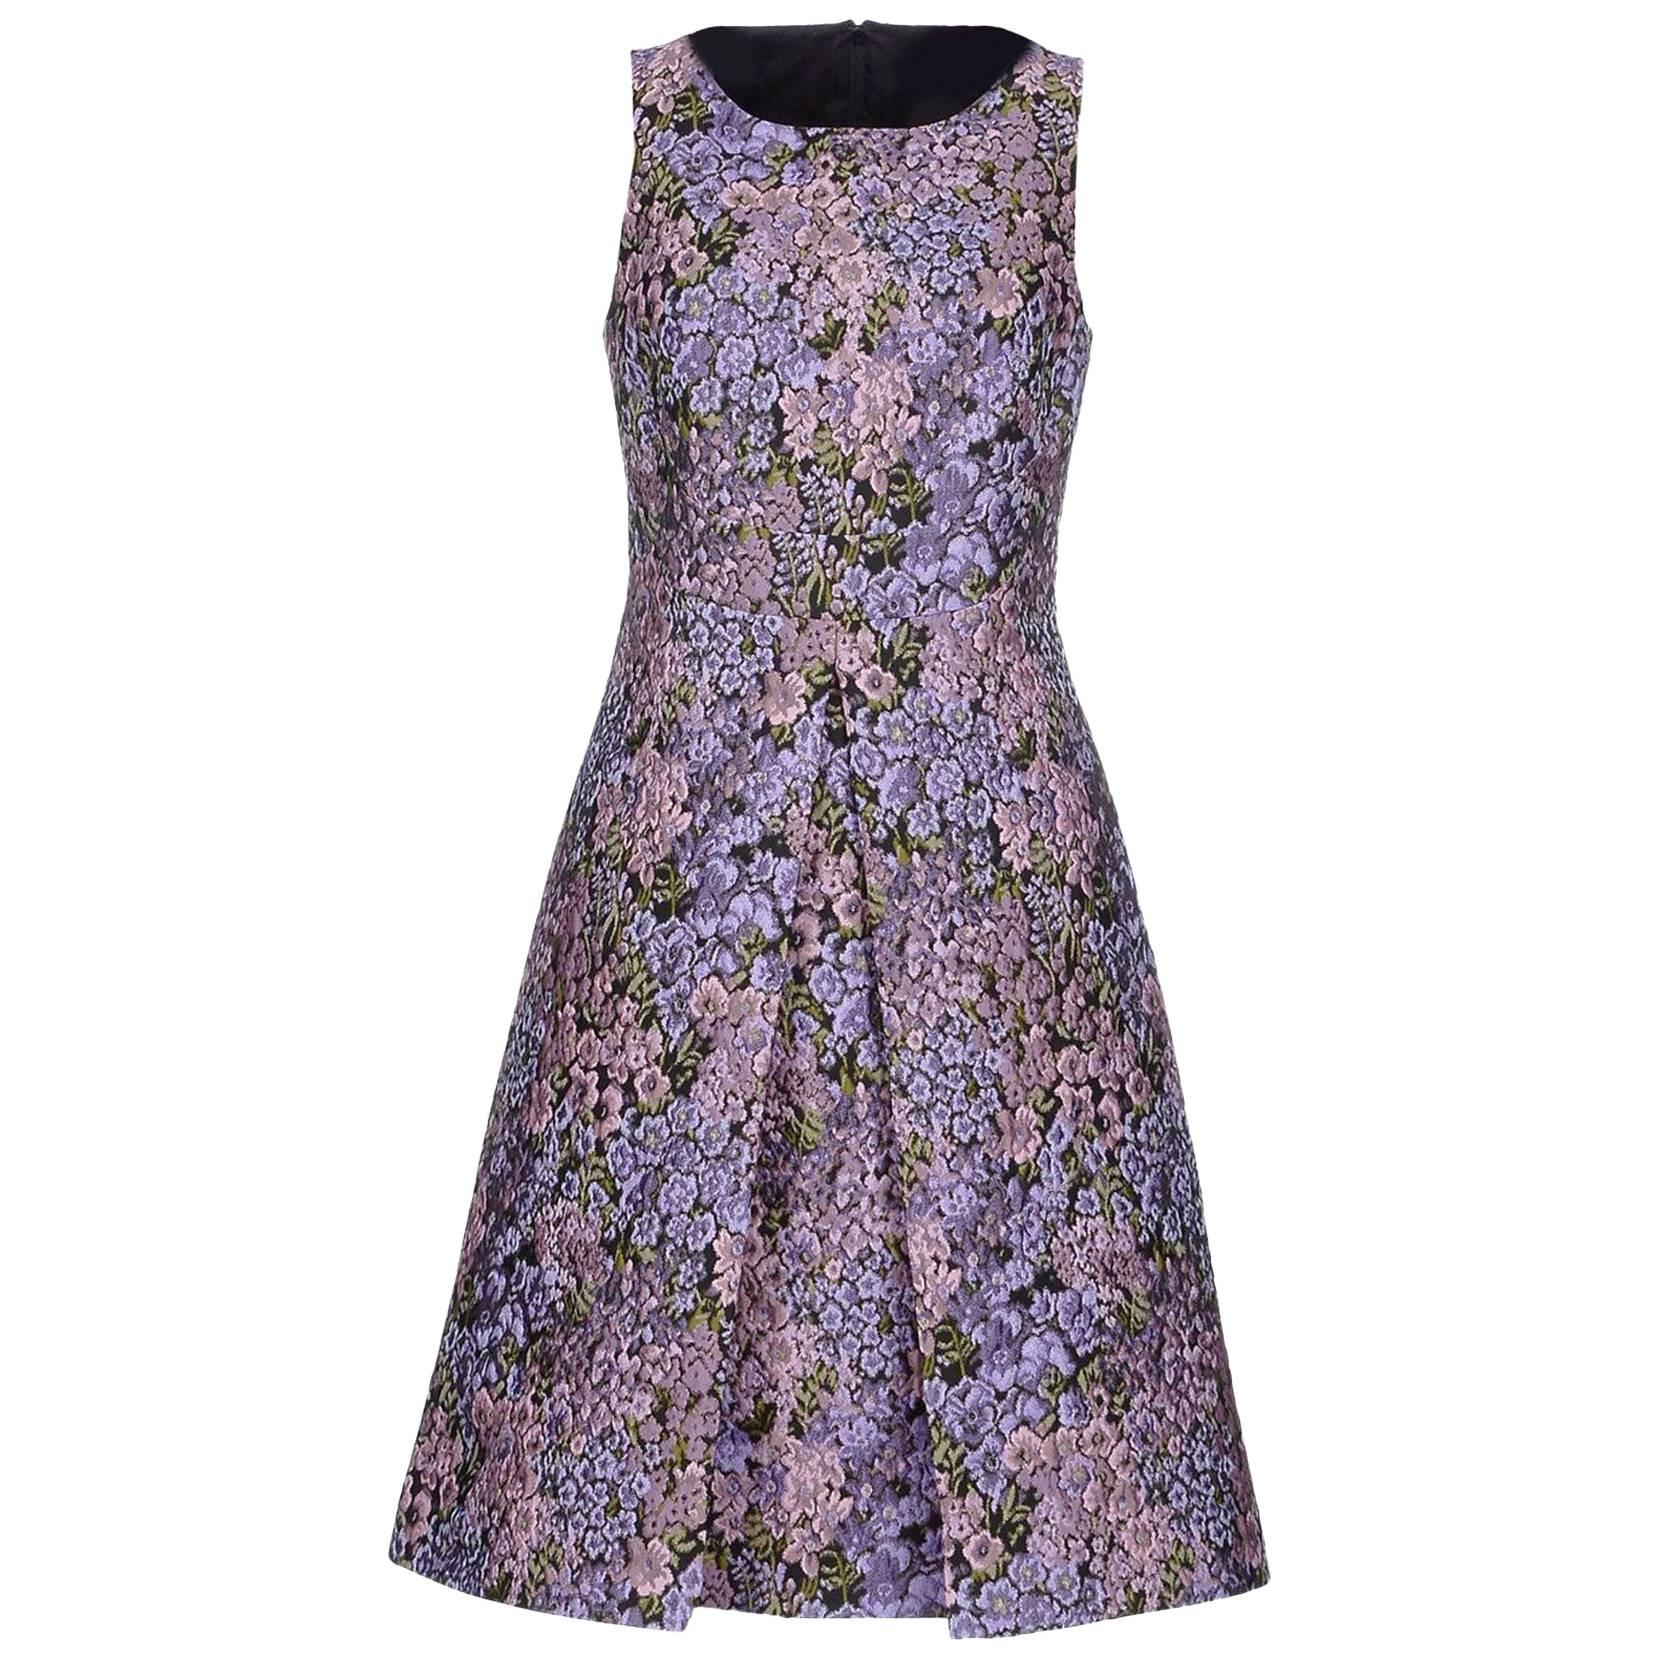 MICHAEL KORS Jacquard Fliederfarbenes Kleid mit Blumenmuster, Größe 12 im Angebot